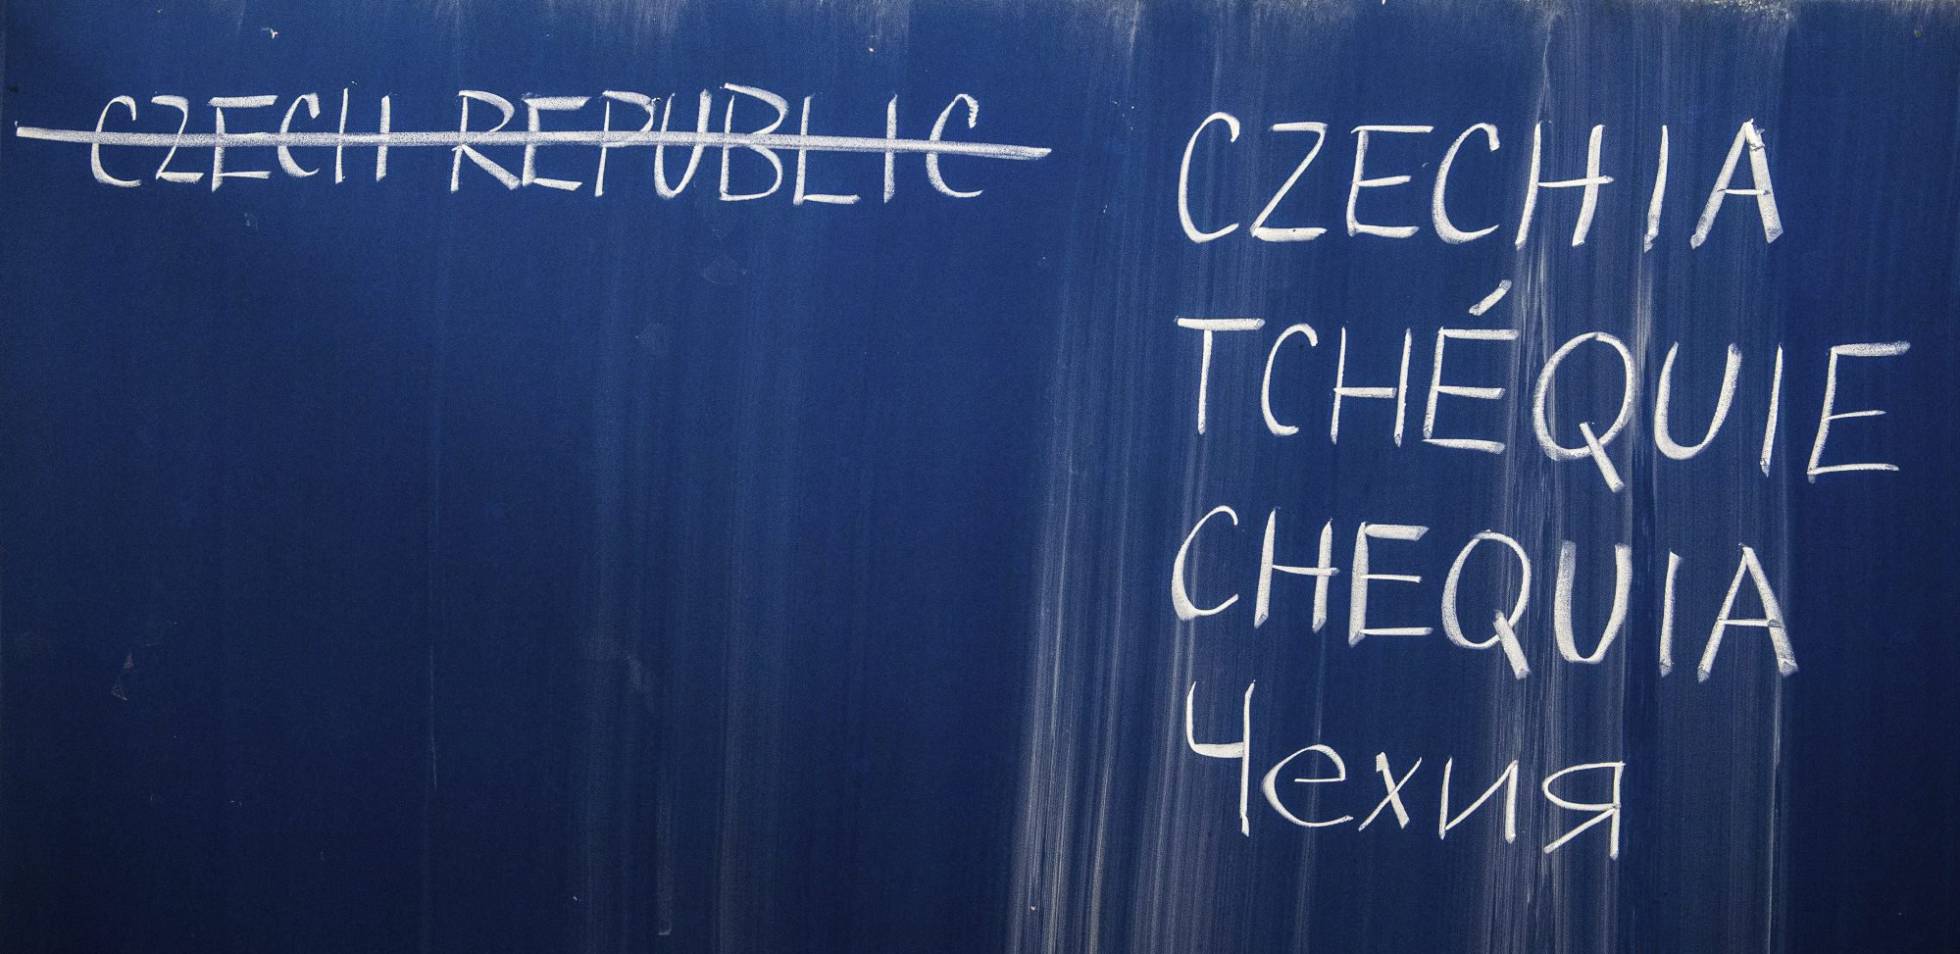 La República Checa tendrá un nombre nuevo dentro de poco: Chequia